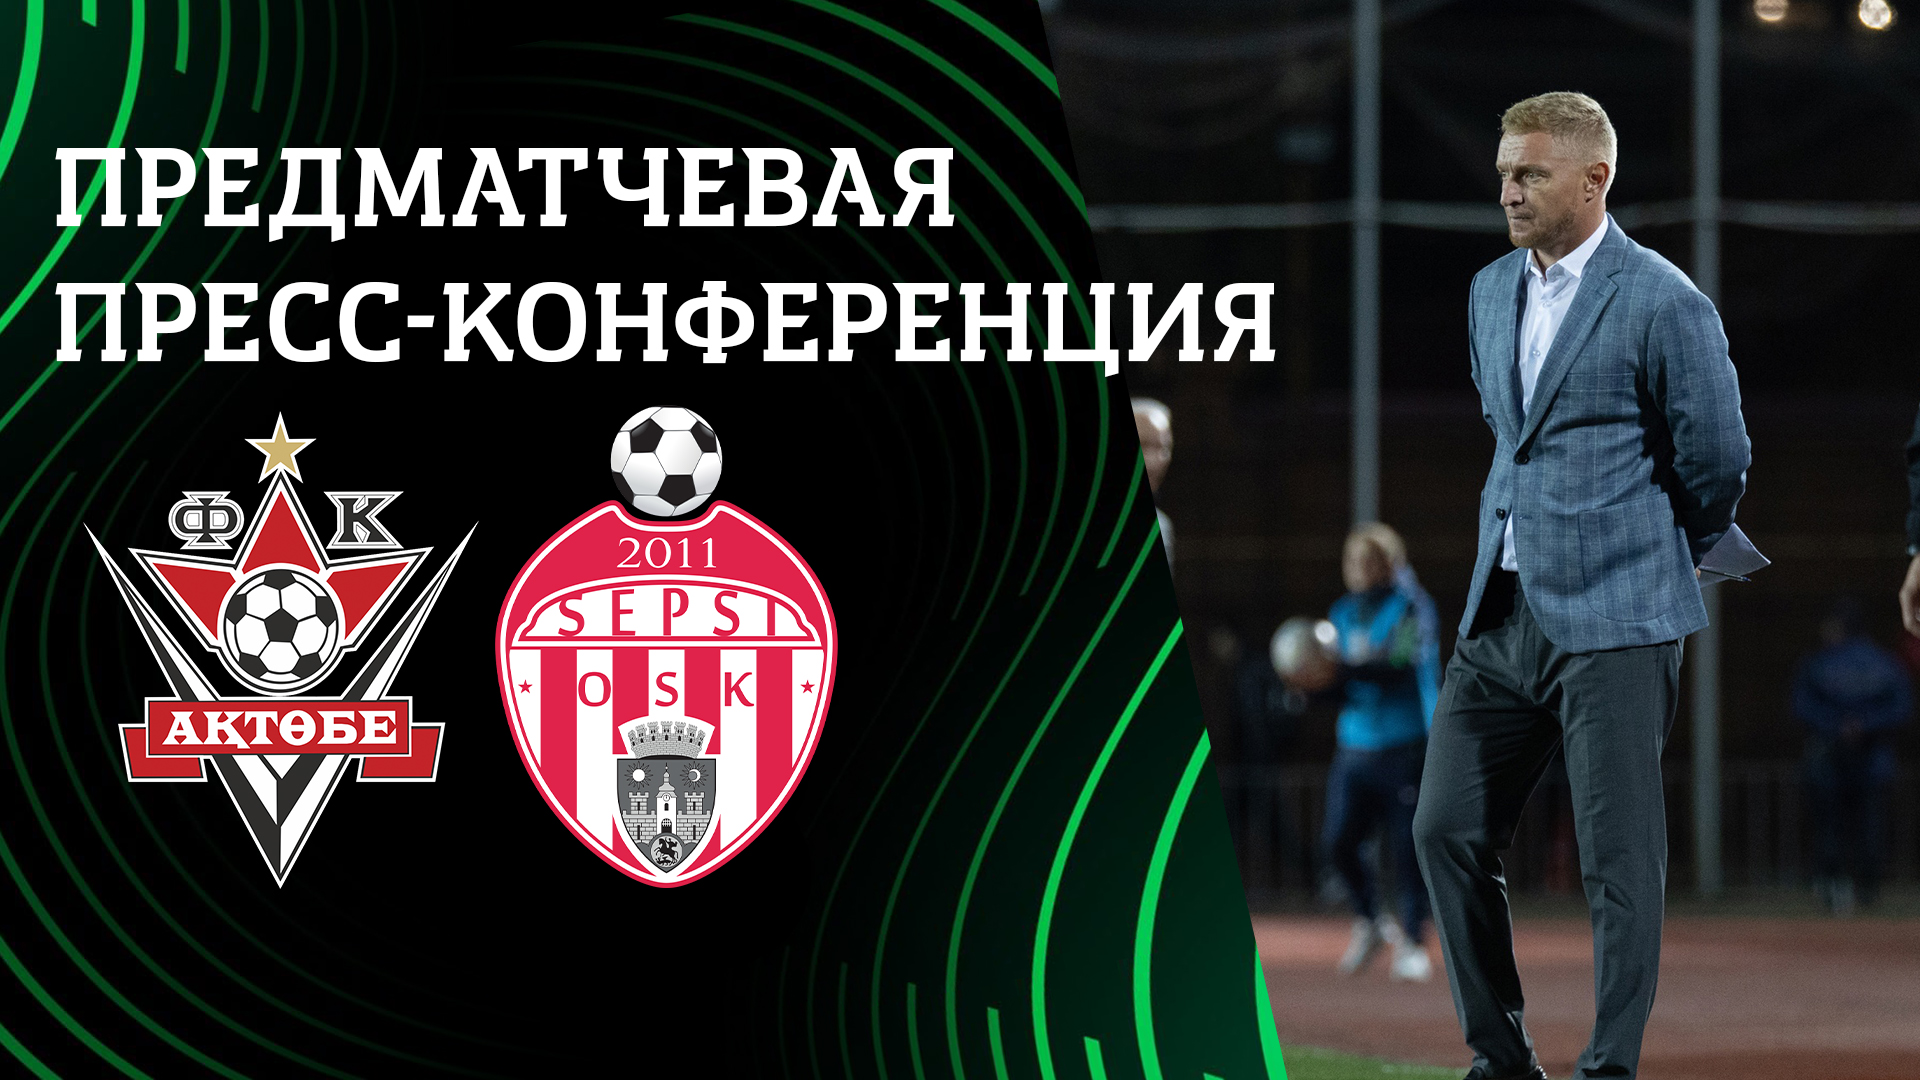 Андрей Карпович: «Мы очень серьезно настроены на предстоящий матч»